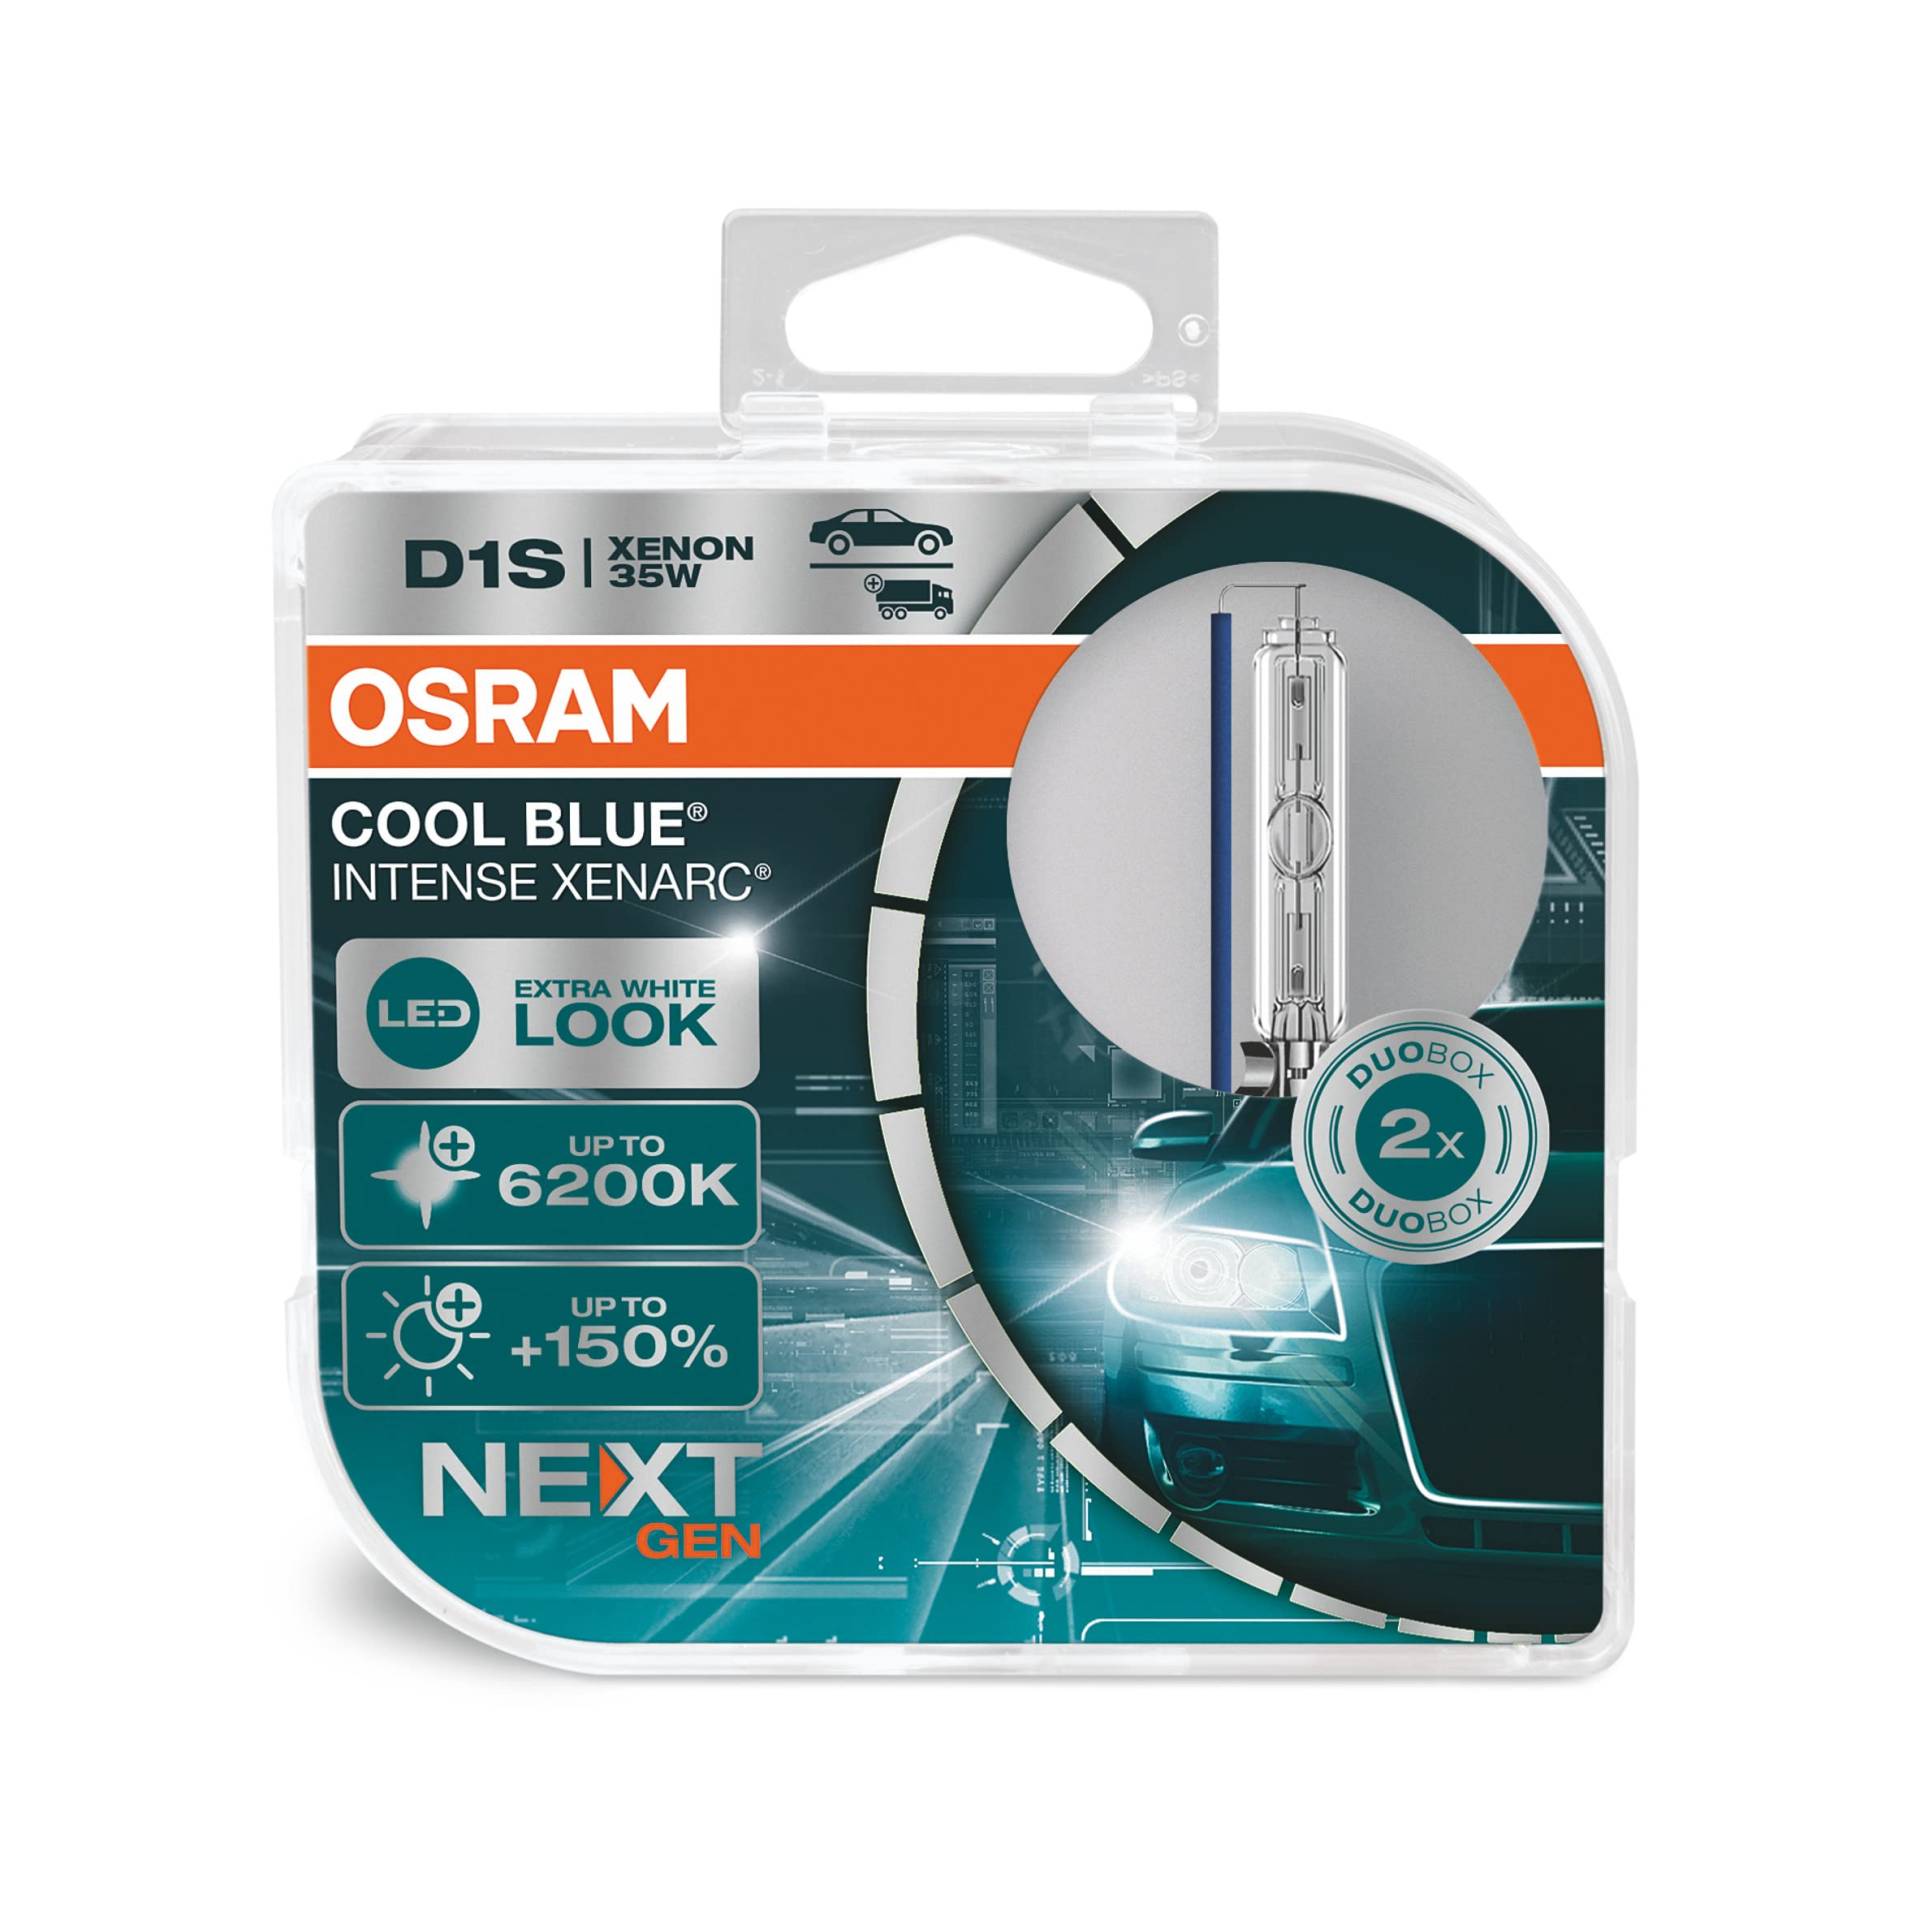 OSRAM XENARC COOL BLUE INTENSE D1S, 150% mehr Helligkeit, bis zu 6.200K, Xenon-Scheinwerferlampe, LED Look, Duo Box (2 Lampen) von Osram